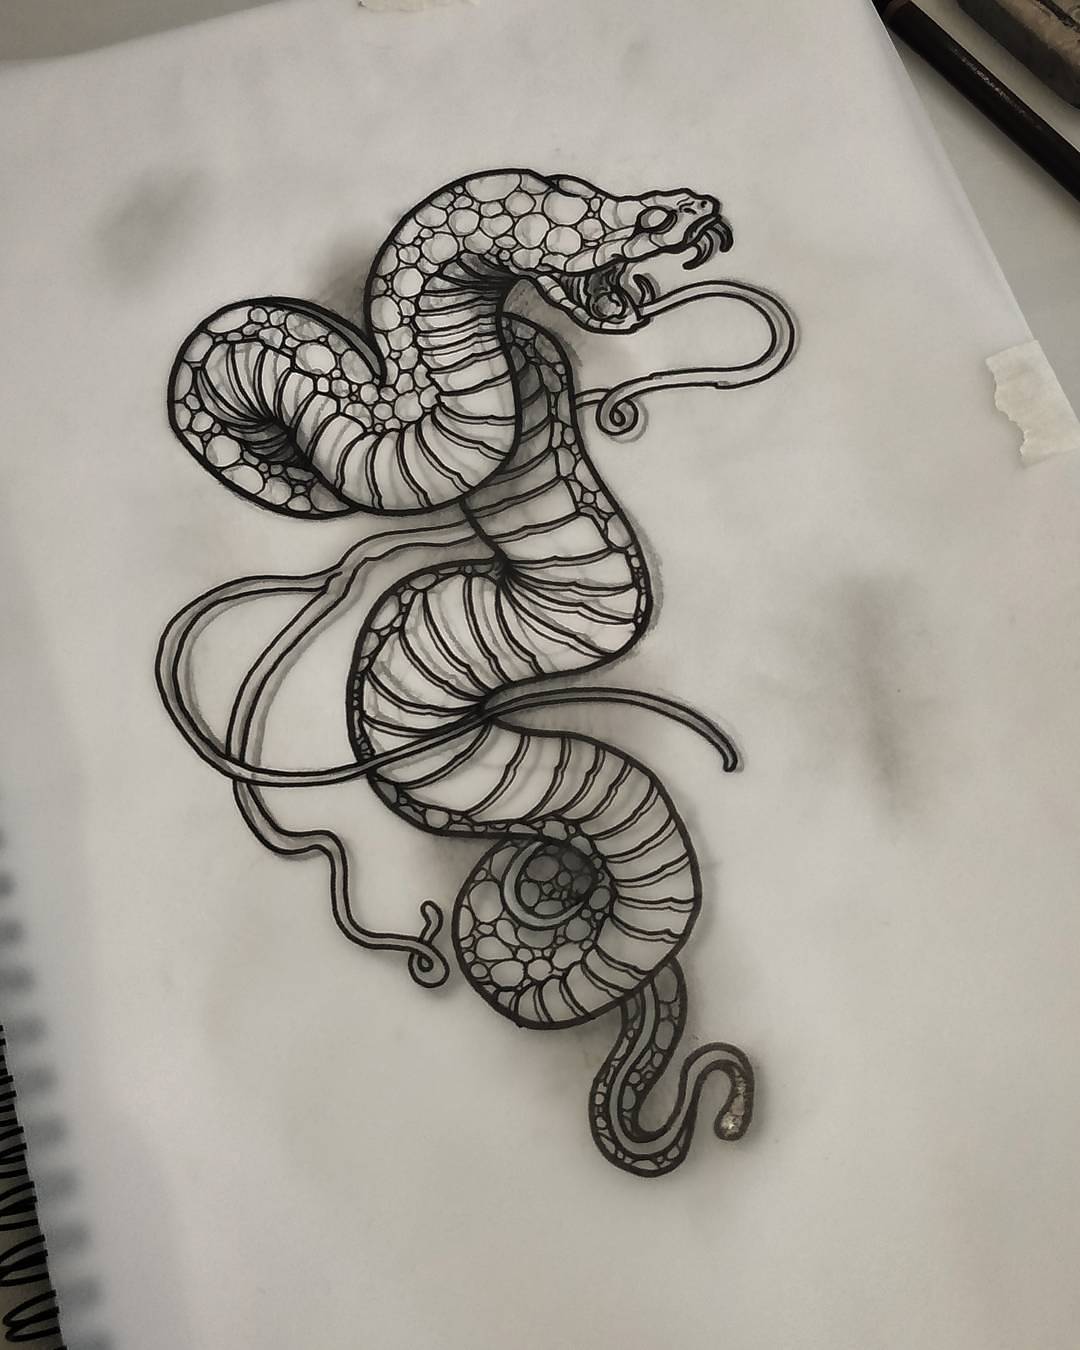 手臂黑灰蛇纹身图案